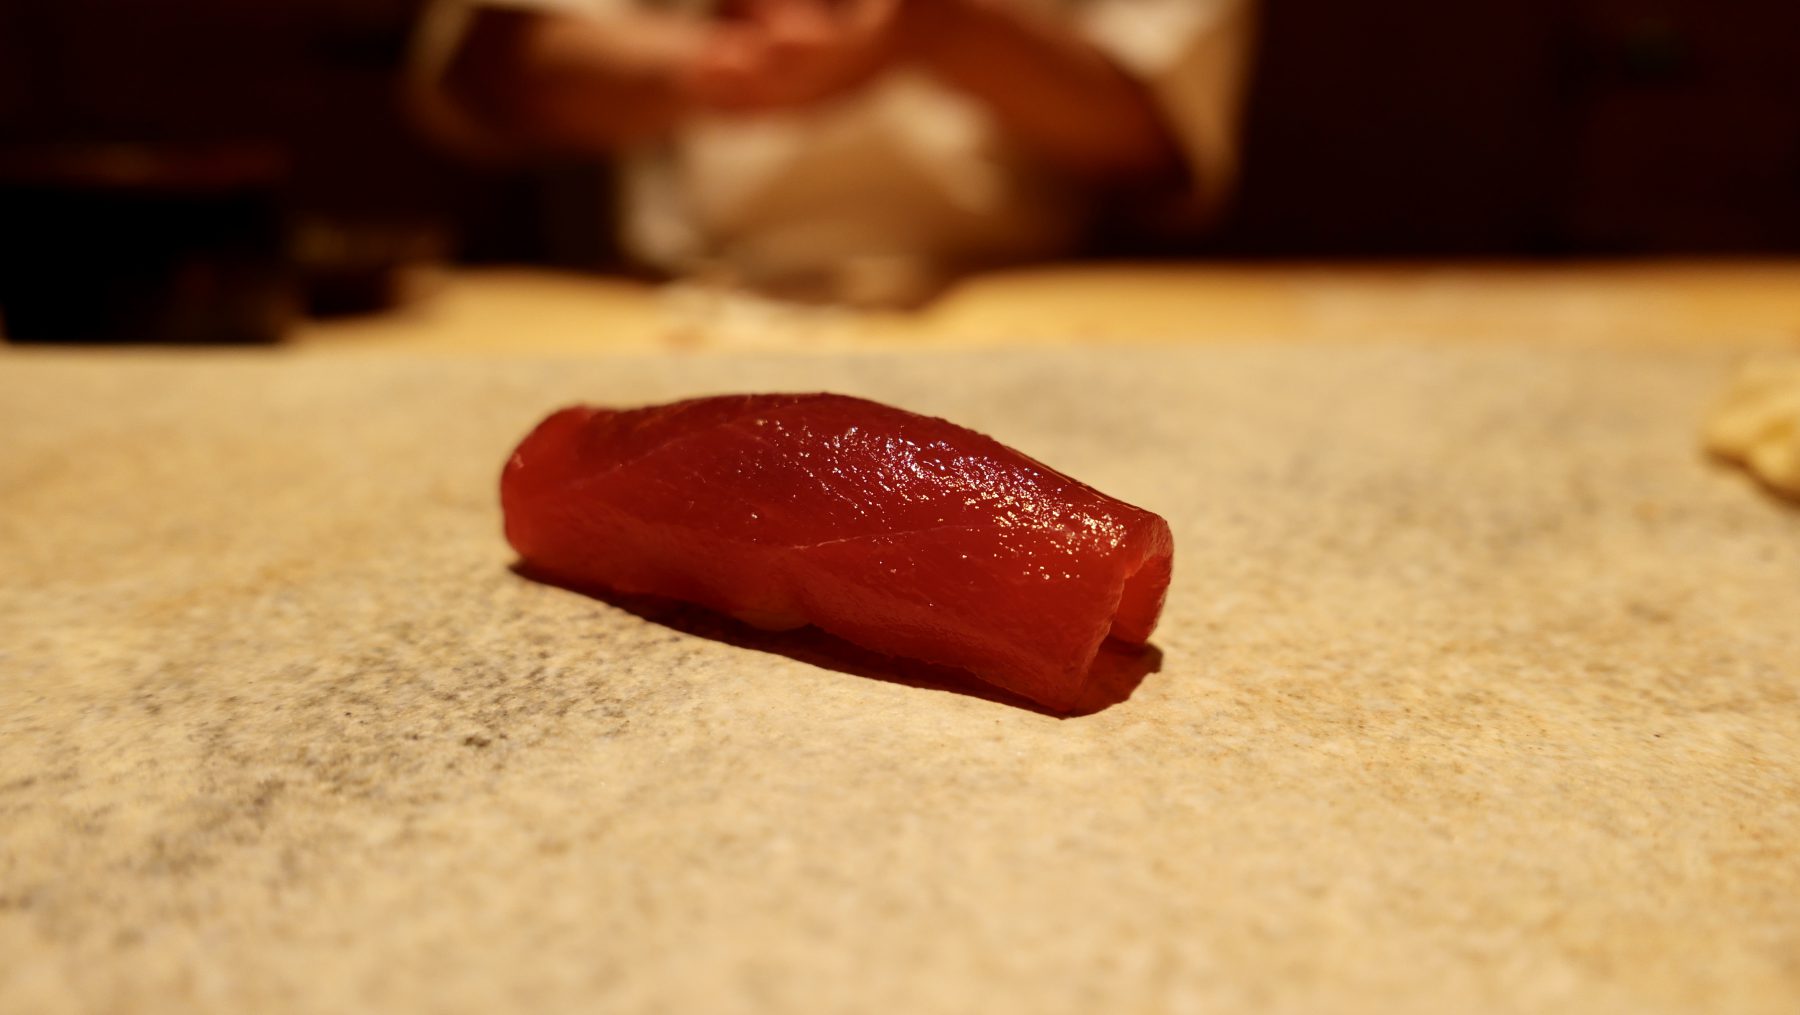 Akami zuke at Sushi Saito,Tokyo